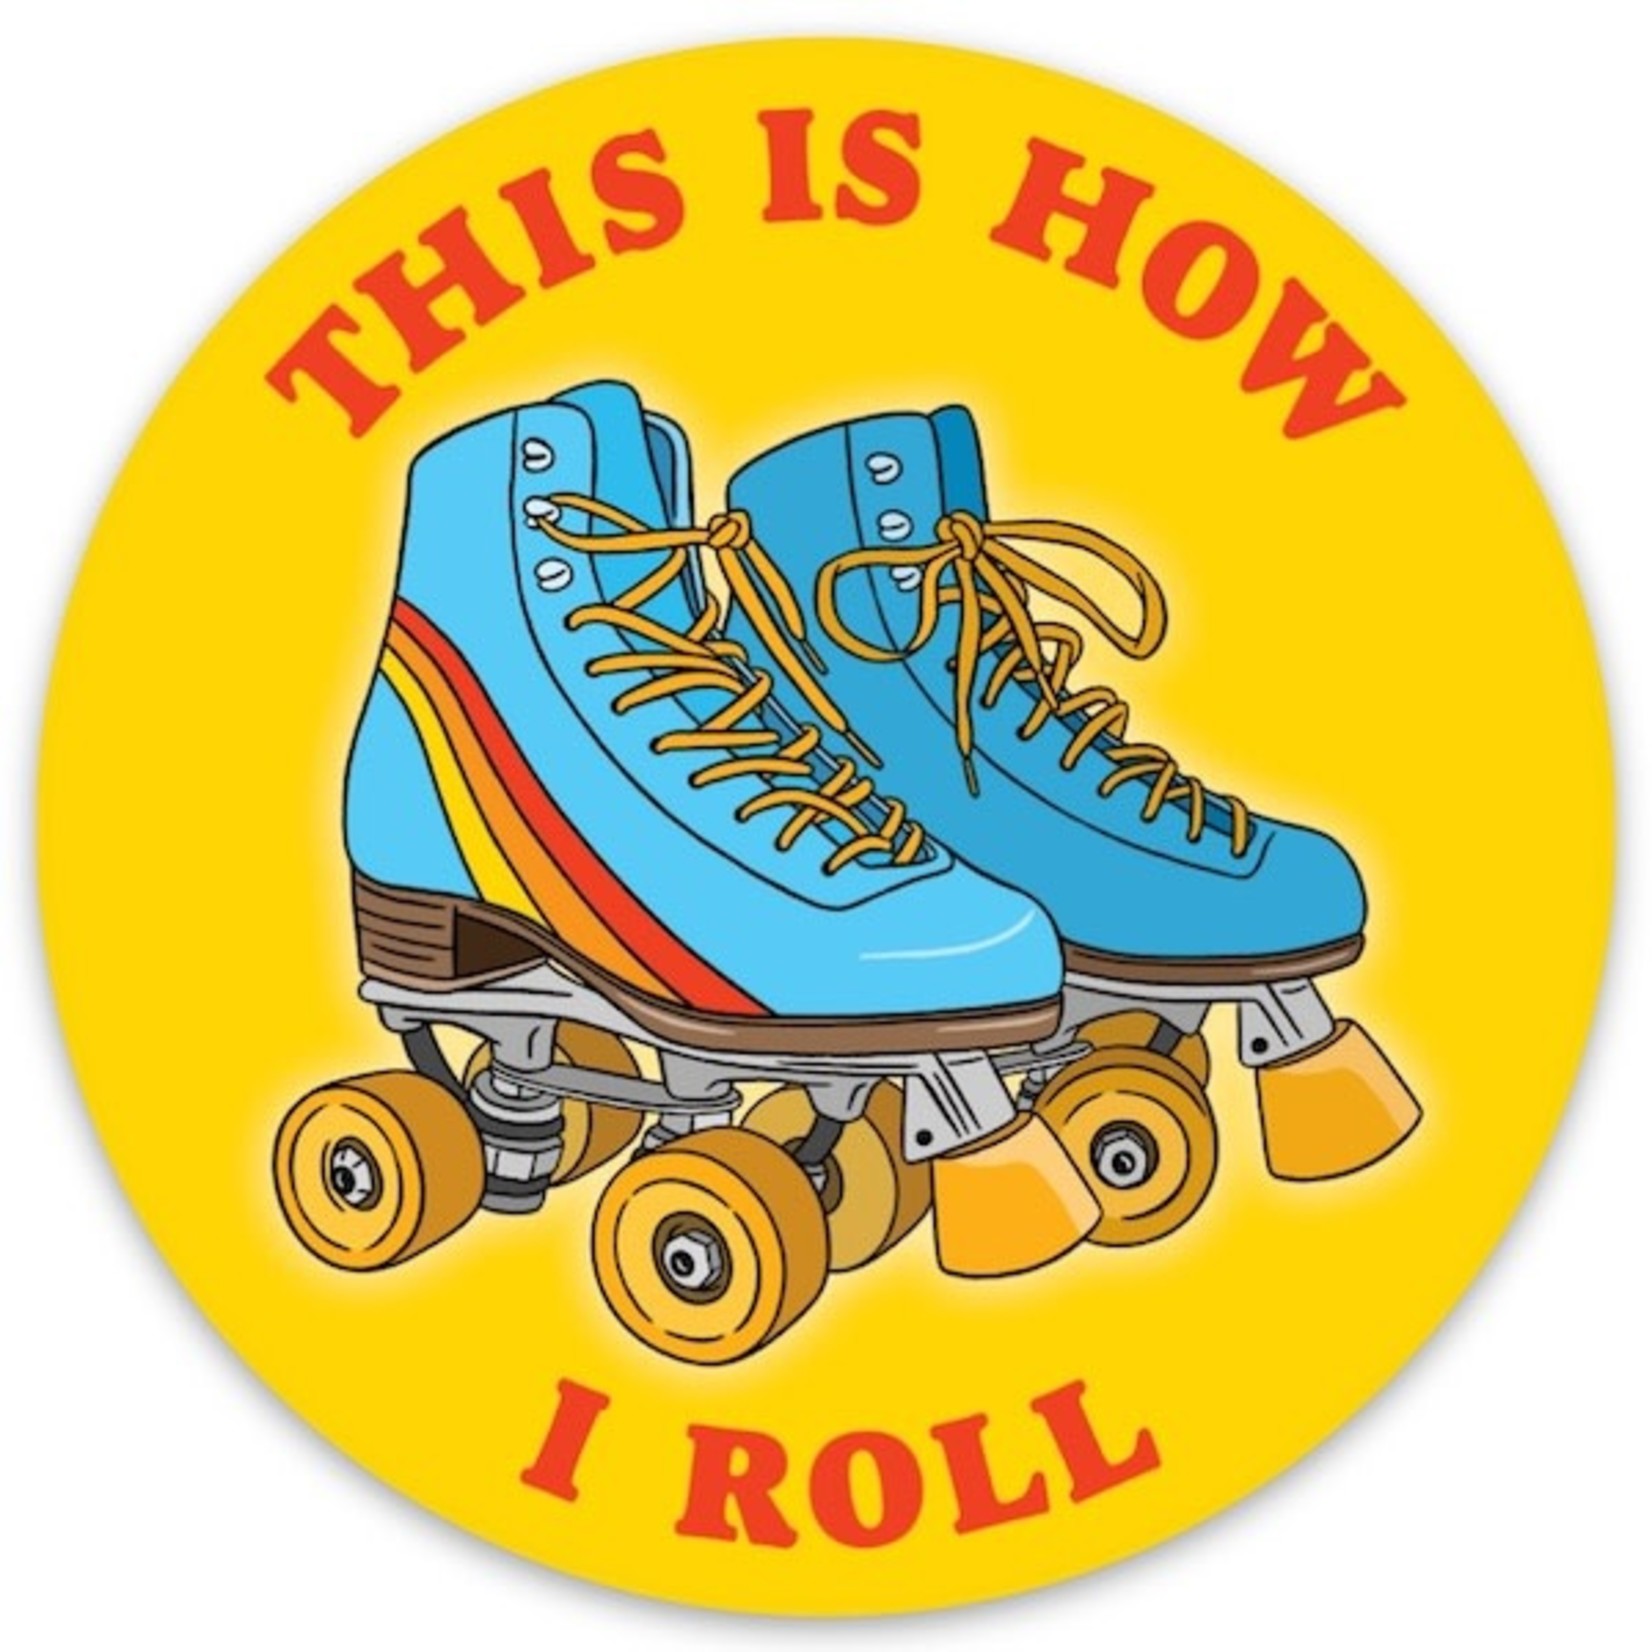 The Found Roller Skates Sticker